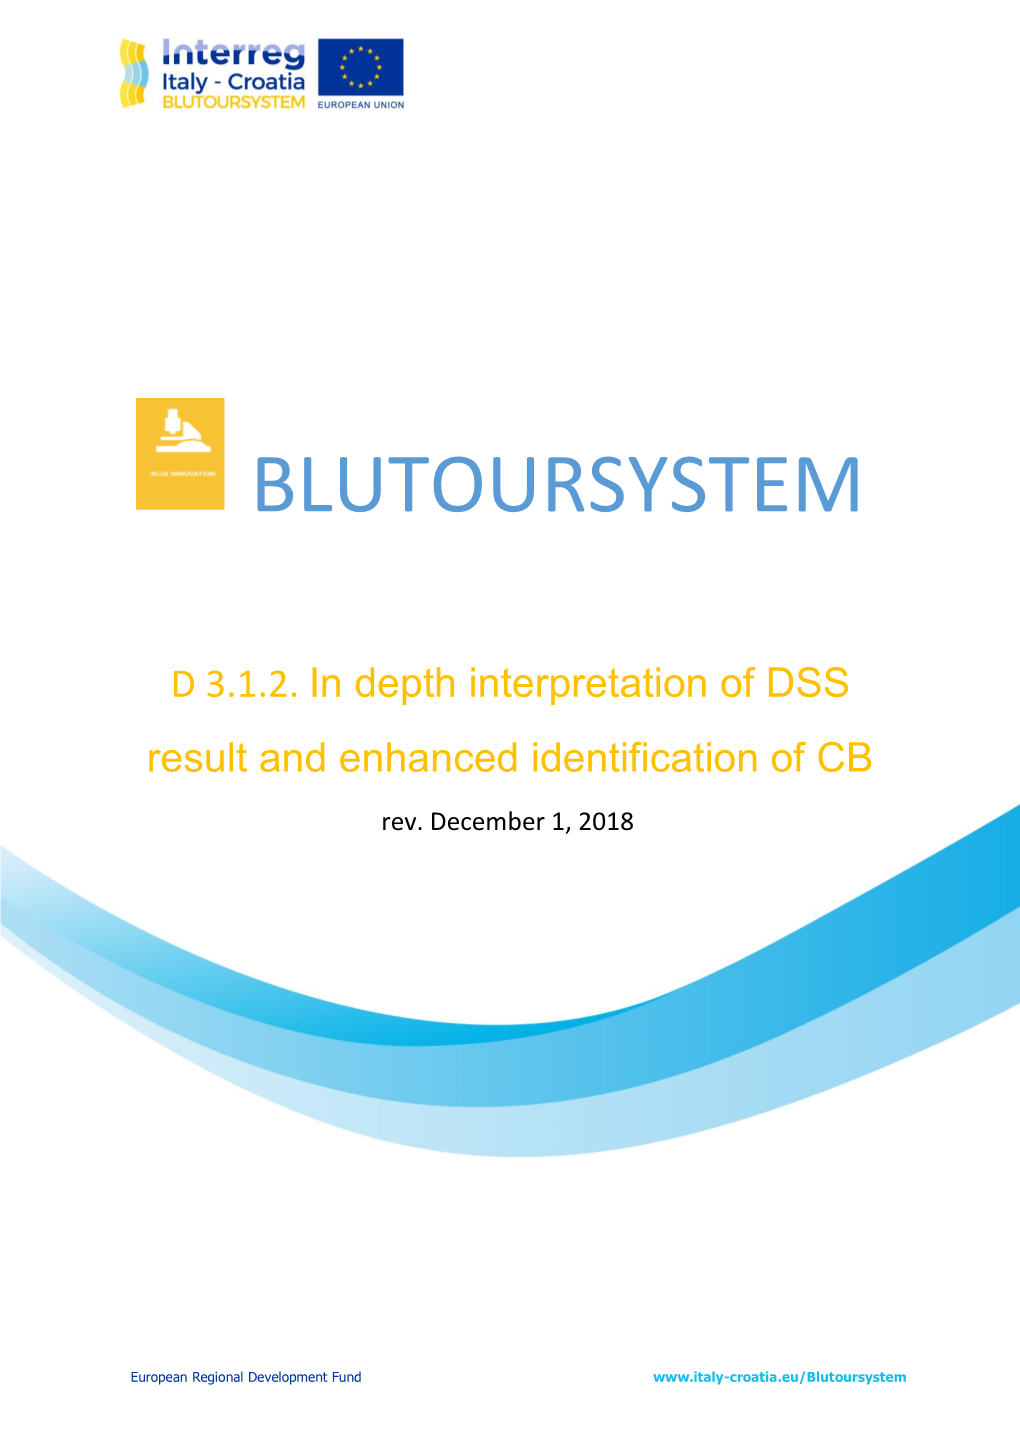 In Depth Interpretation of DSS Result and Enhanced Identification of CB